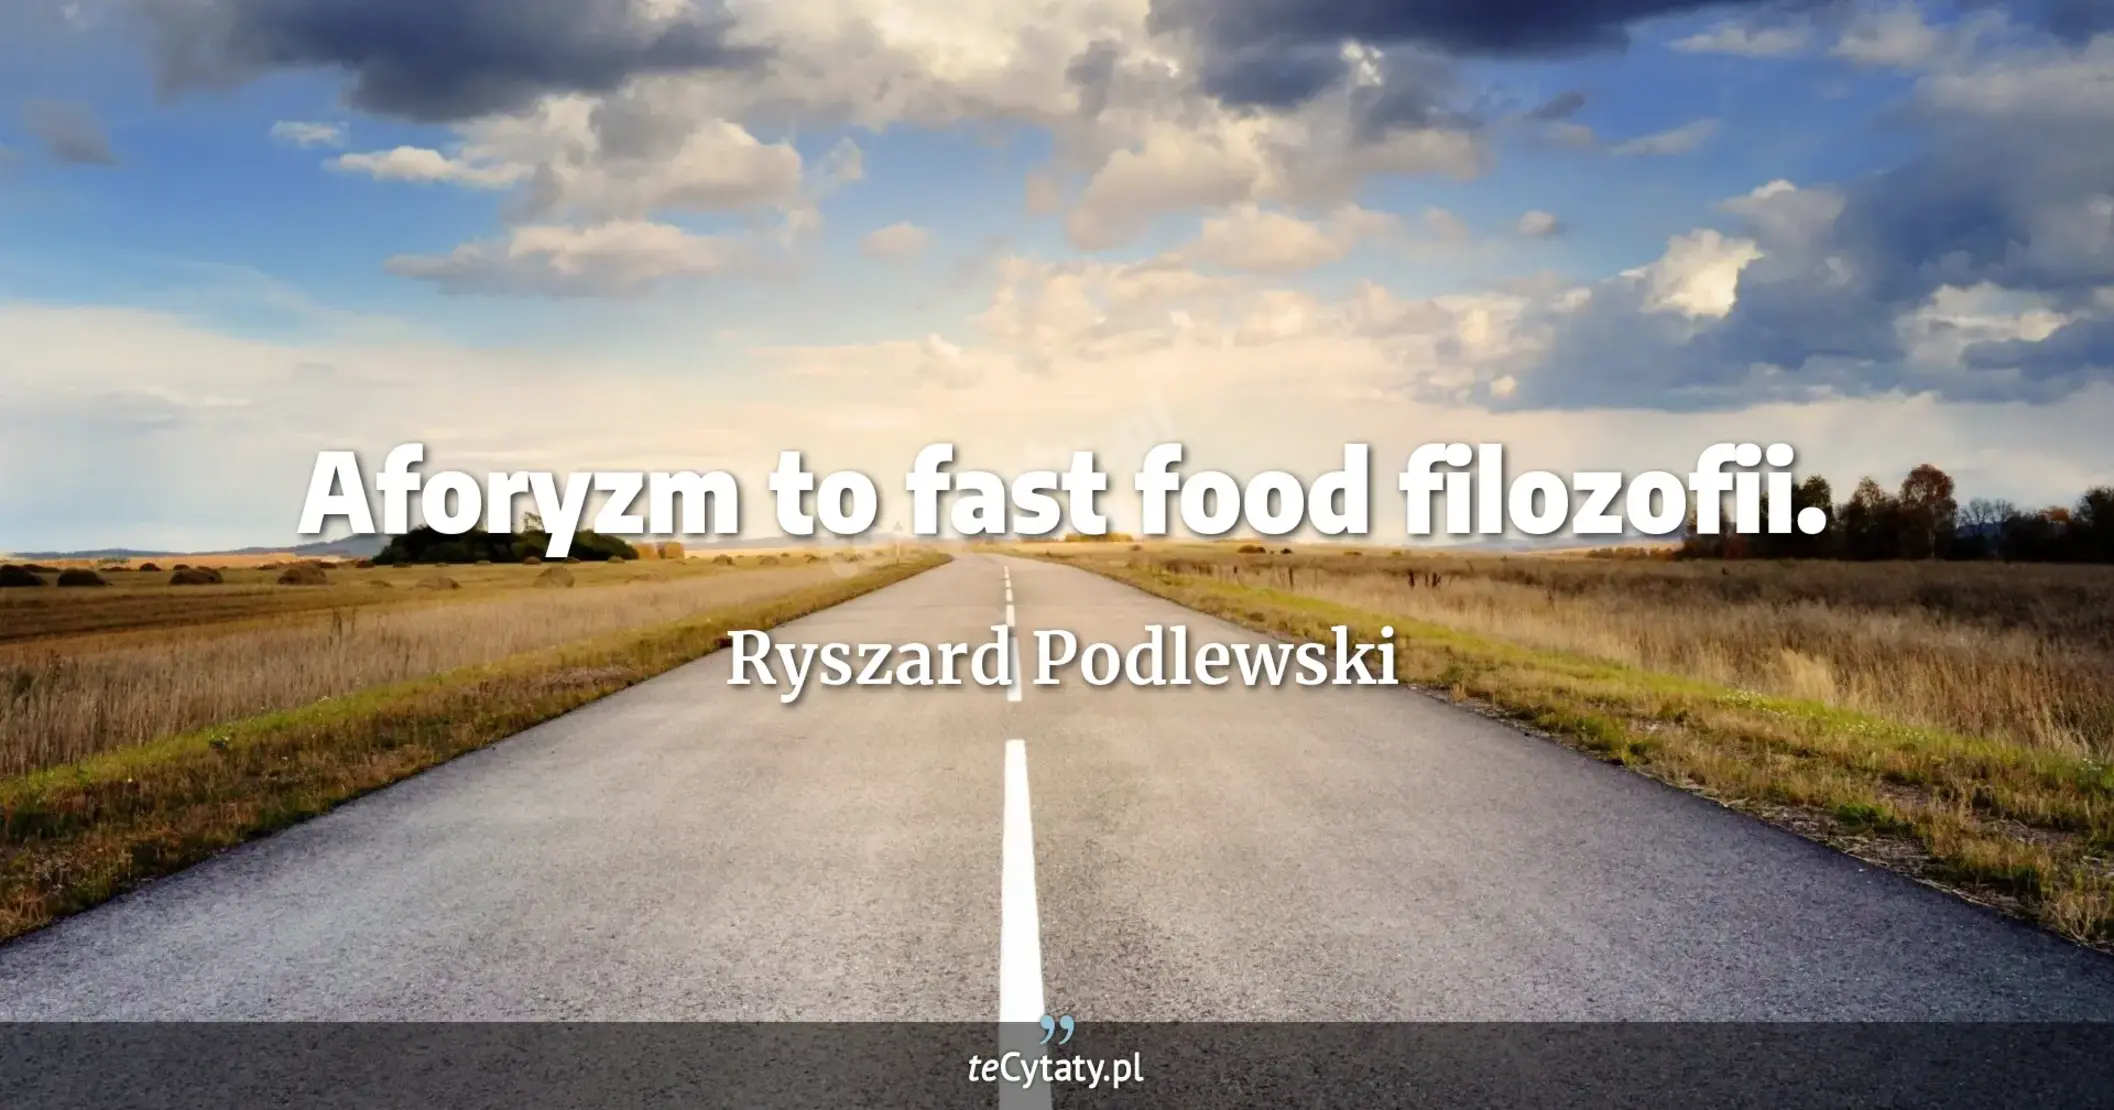 Aforyzm to fast food filozofii. - Ryszard Podlewski